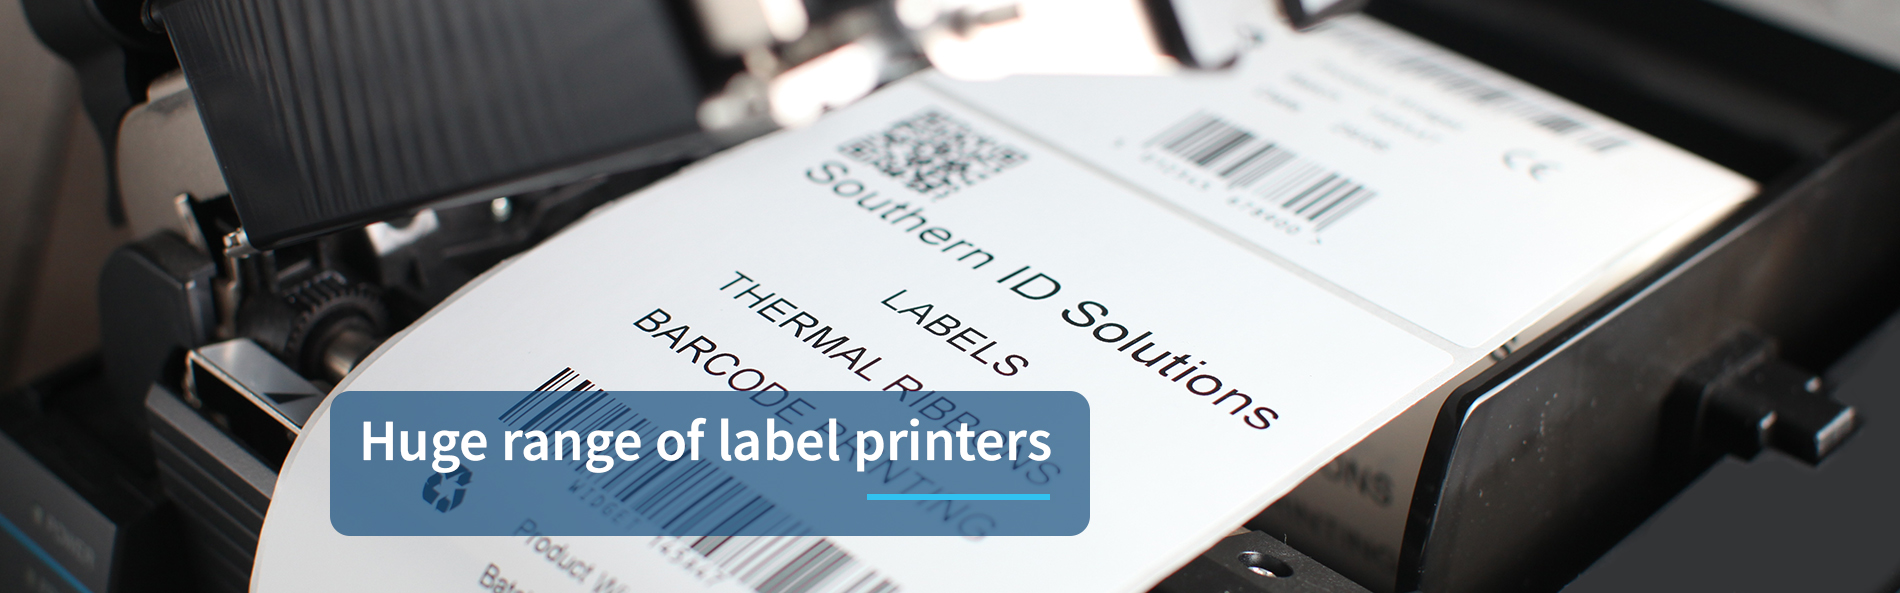 Huge Range of Label Printers